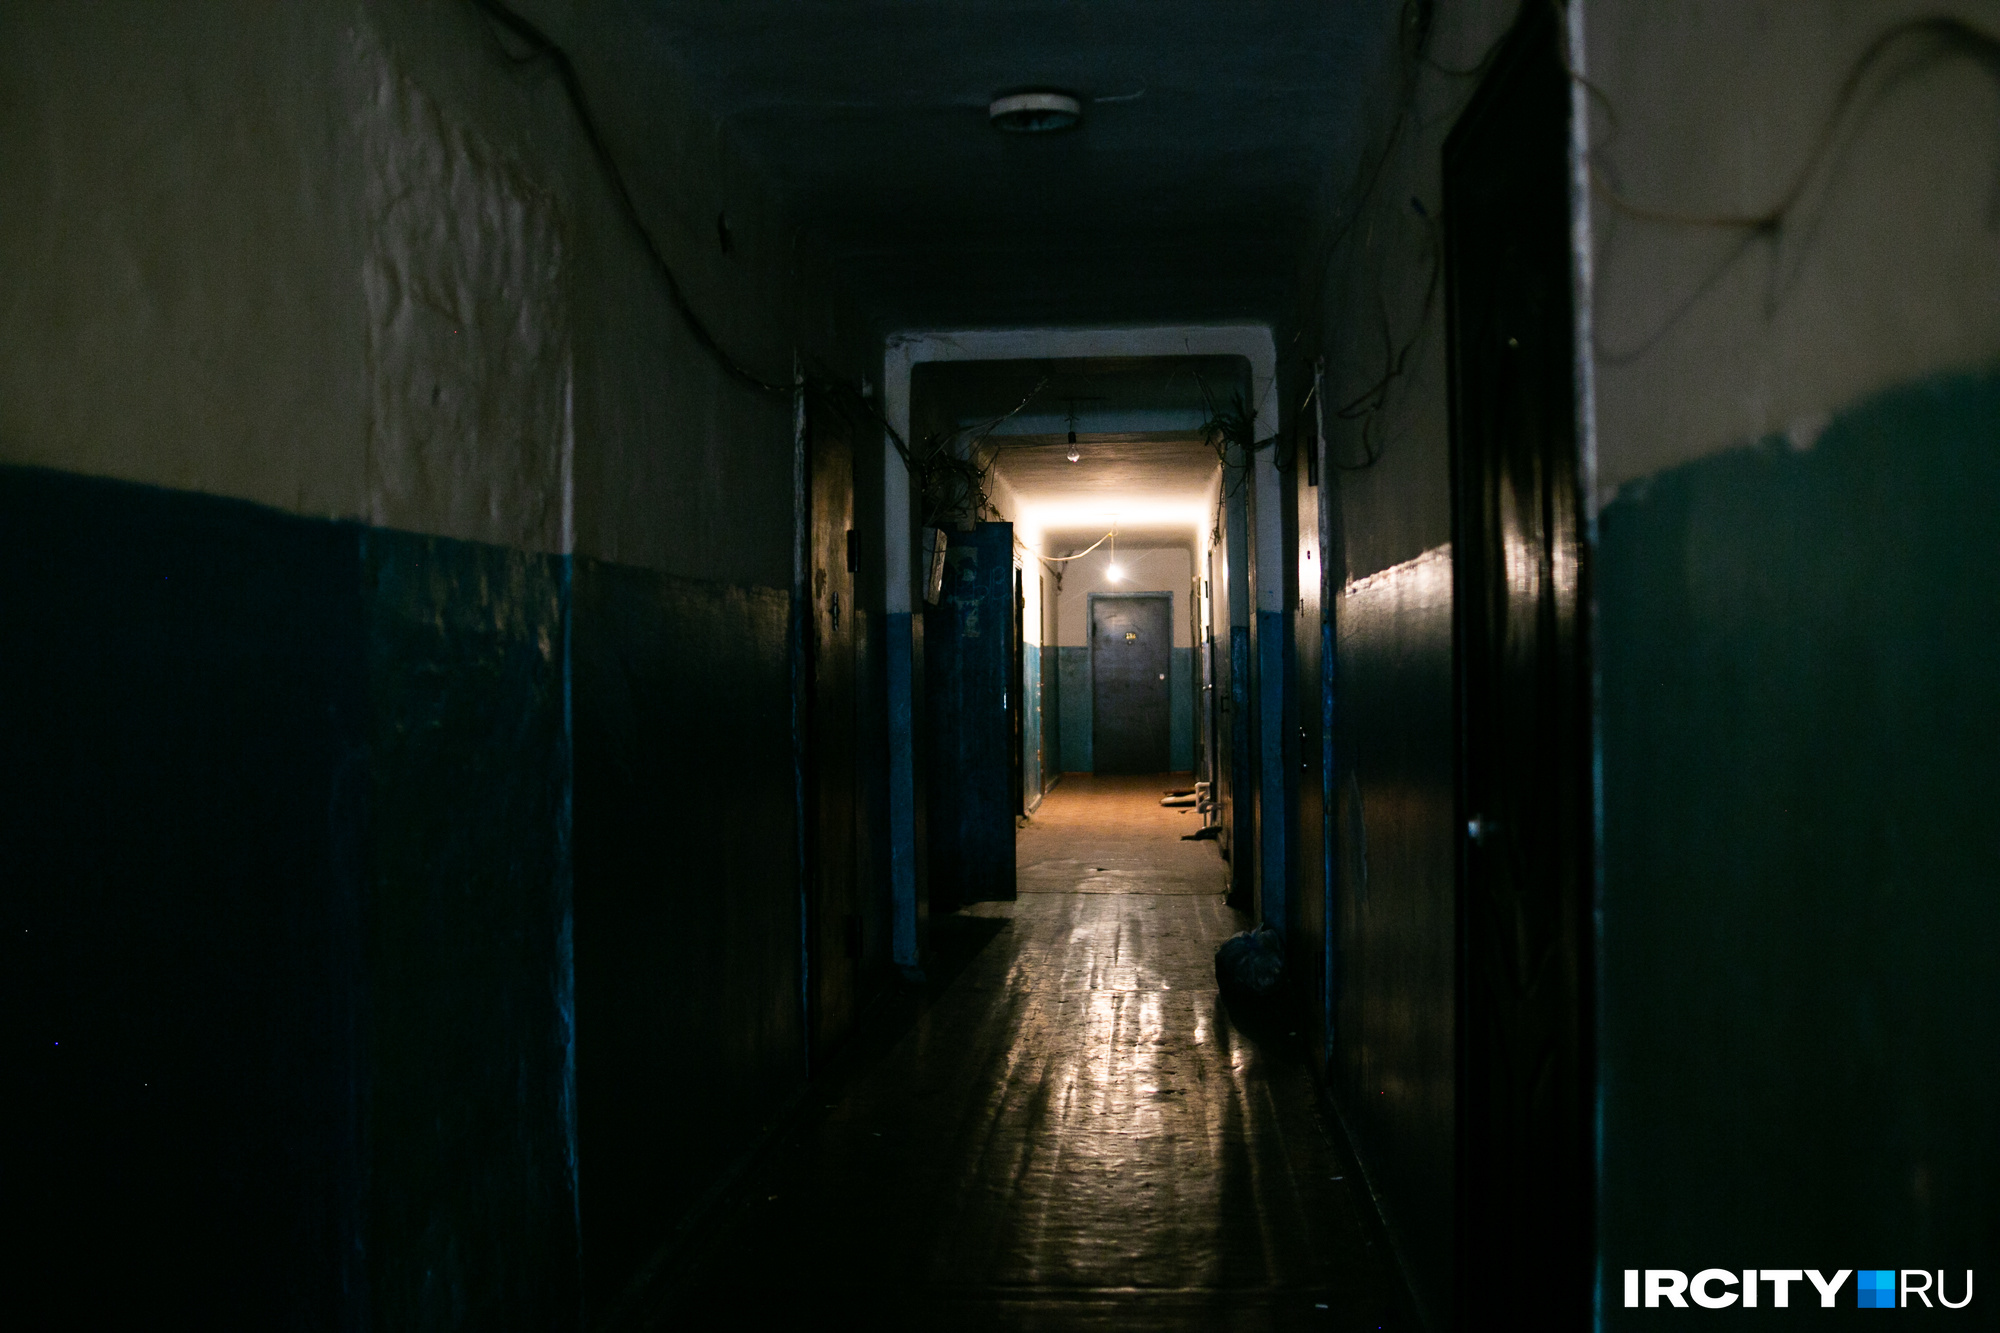 Так выглядит коридор в общежитии